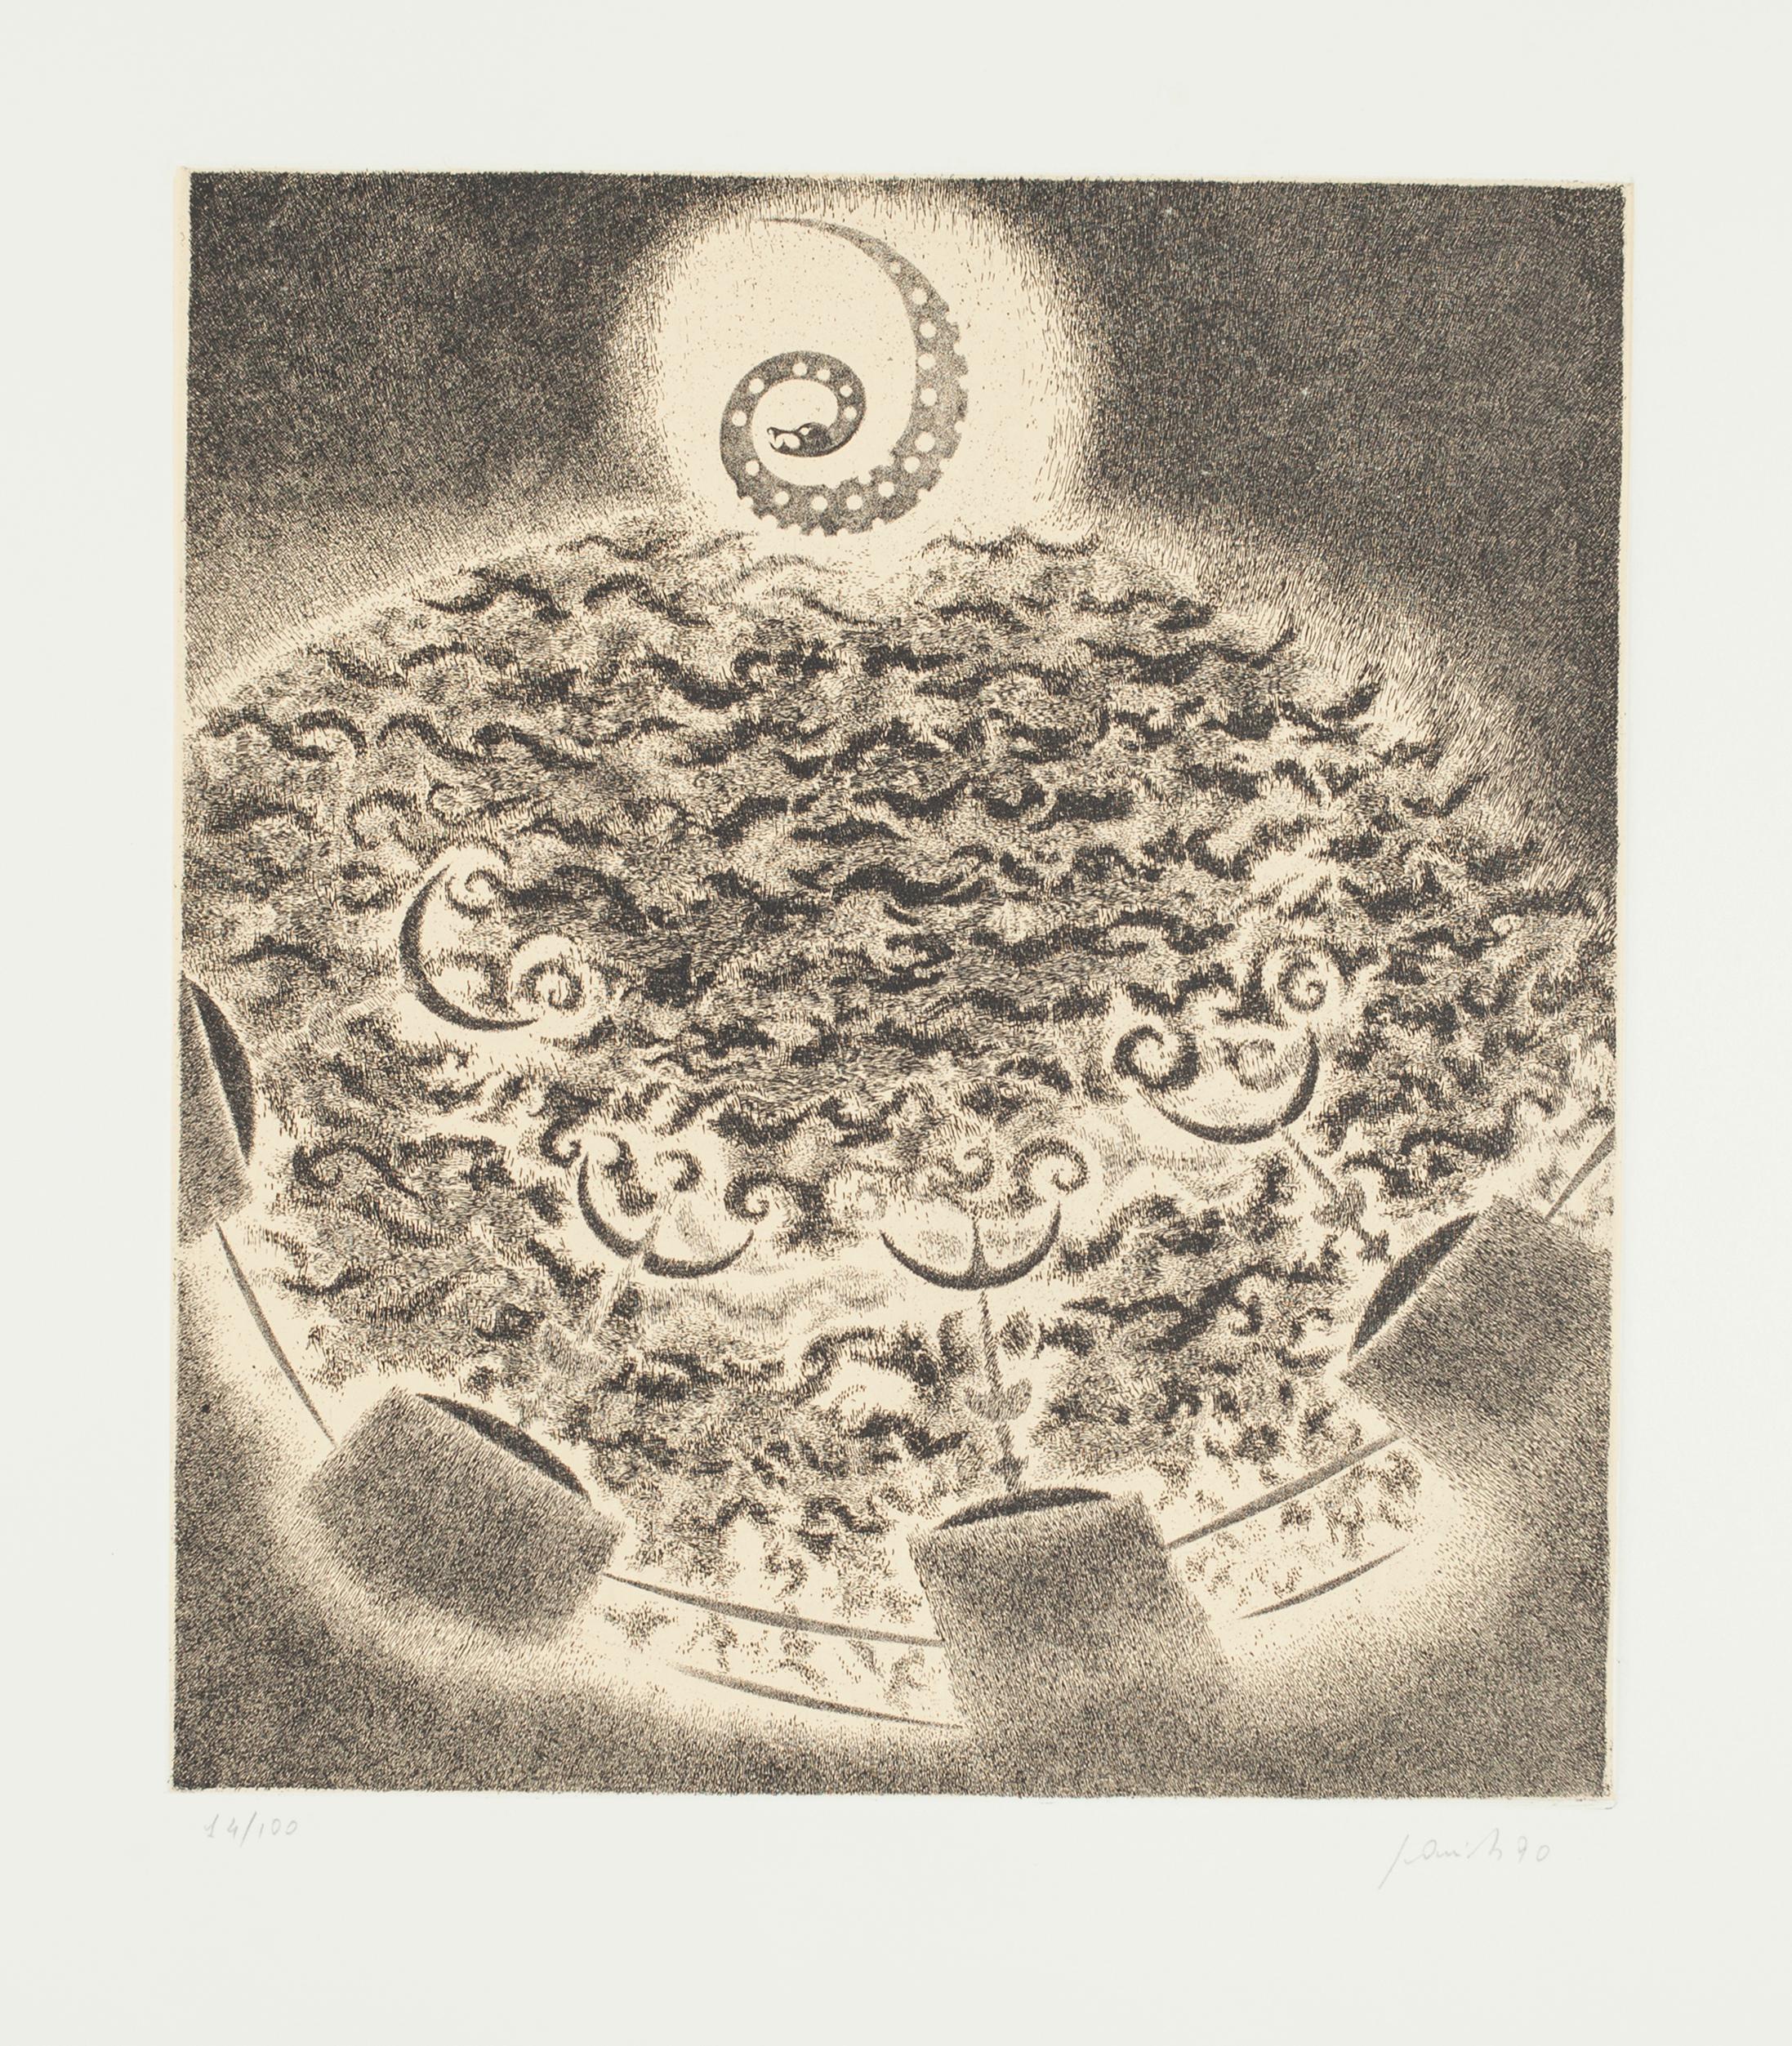 Spiral ist eine originelle, prächtige Radierung und Kaltnadelradierung von Edo Janich aus dem Jahr 1990.

Der Erhaltungszustand der Kunstwerke ist ausgezeichnet. 

handsigniert, nummeriert14/100.

Bildgröße: 30 x 27 cm.

Das Kunstwerk stellt die